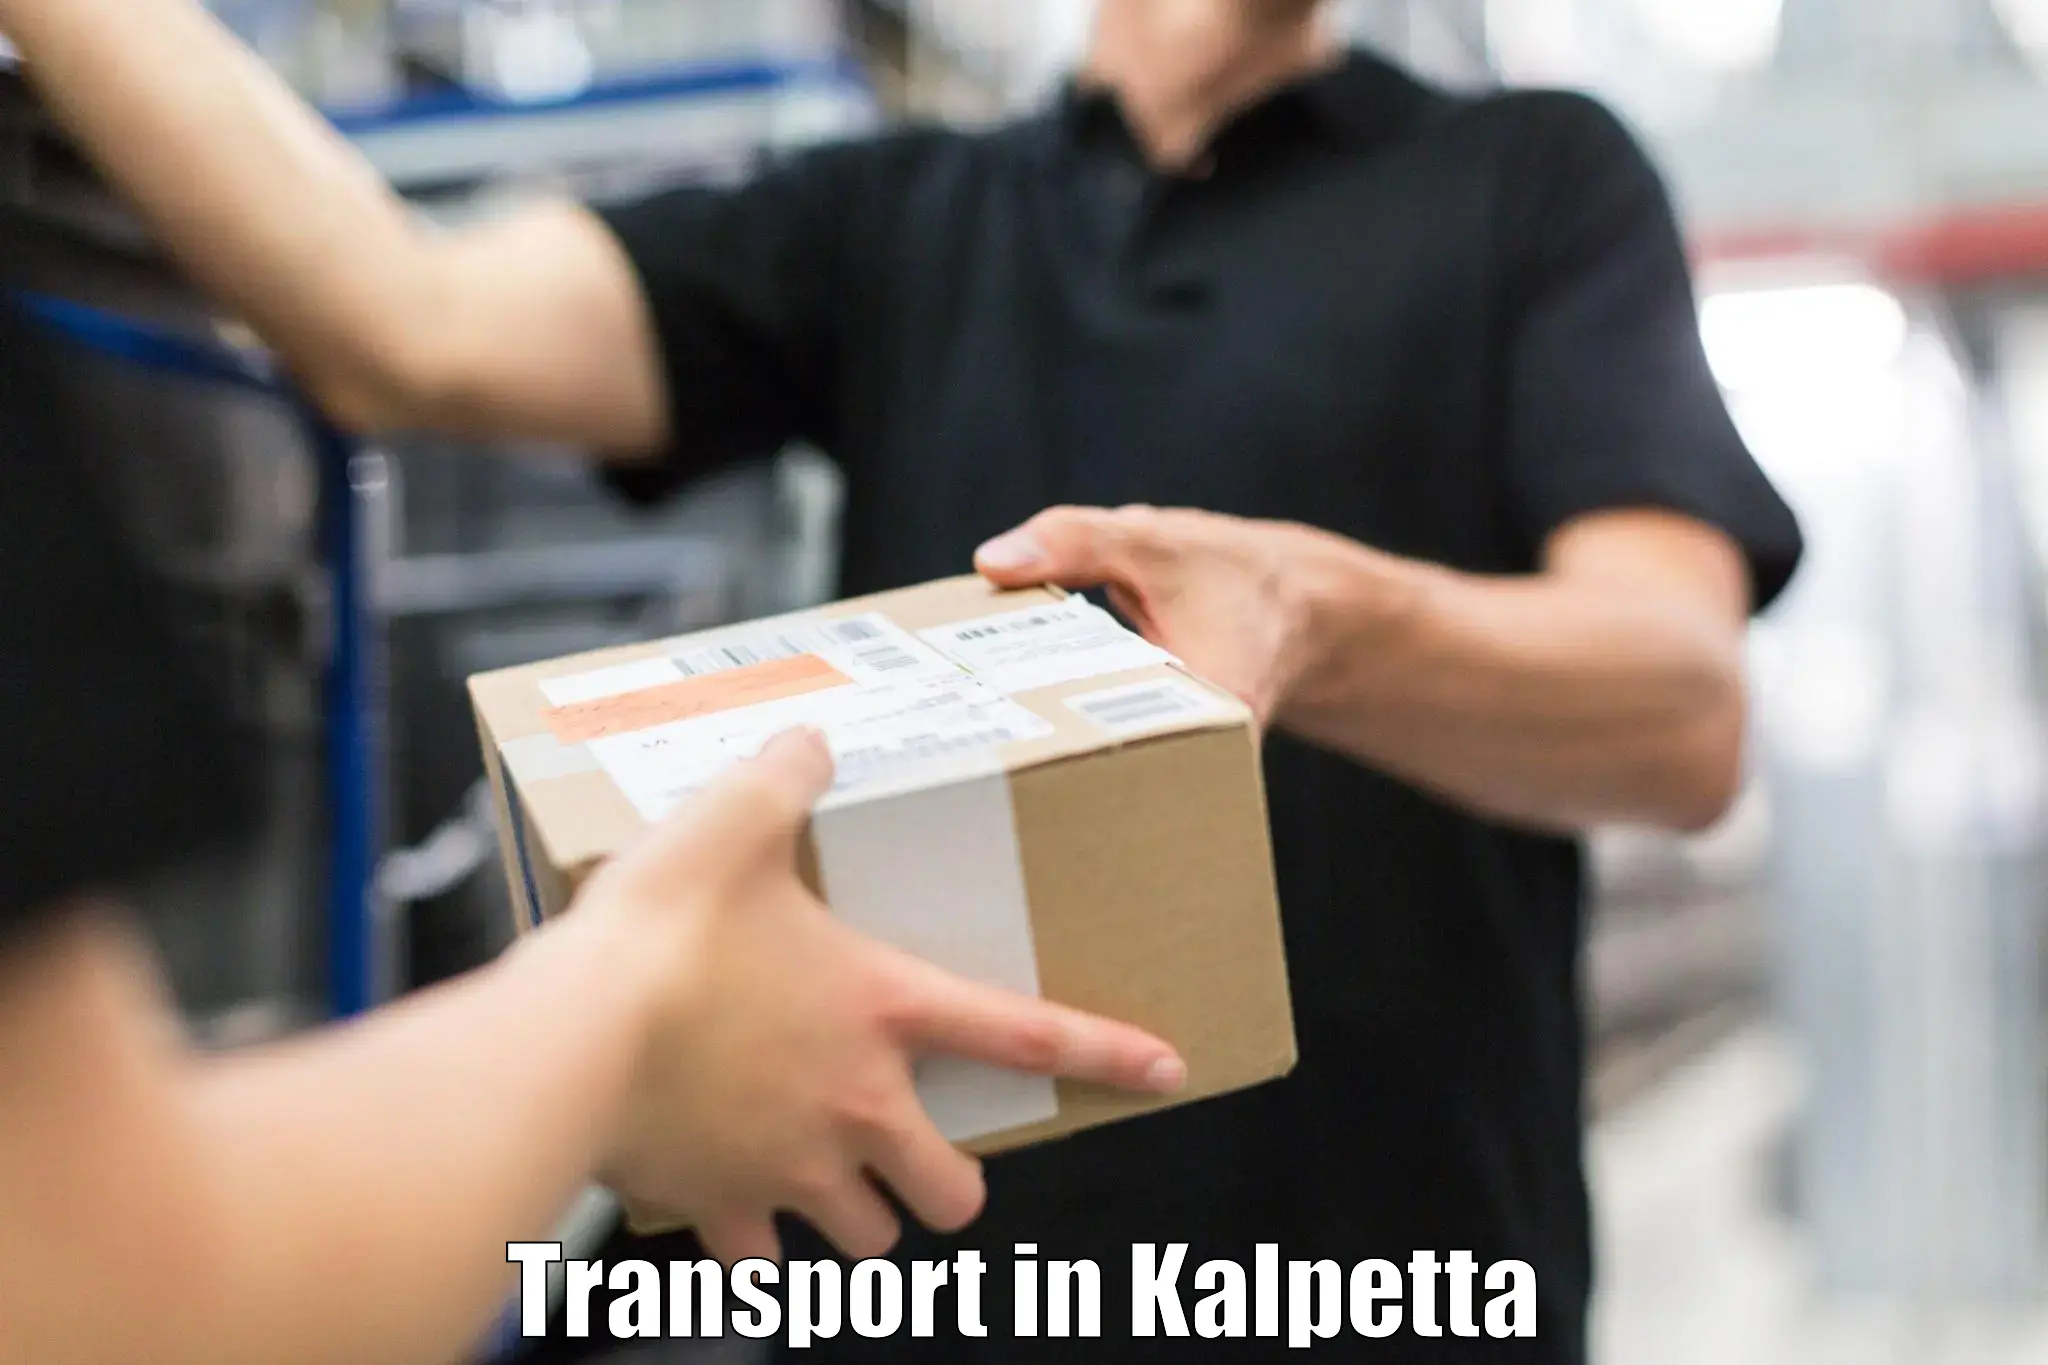 Interstate goods transport in Kalpetta